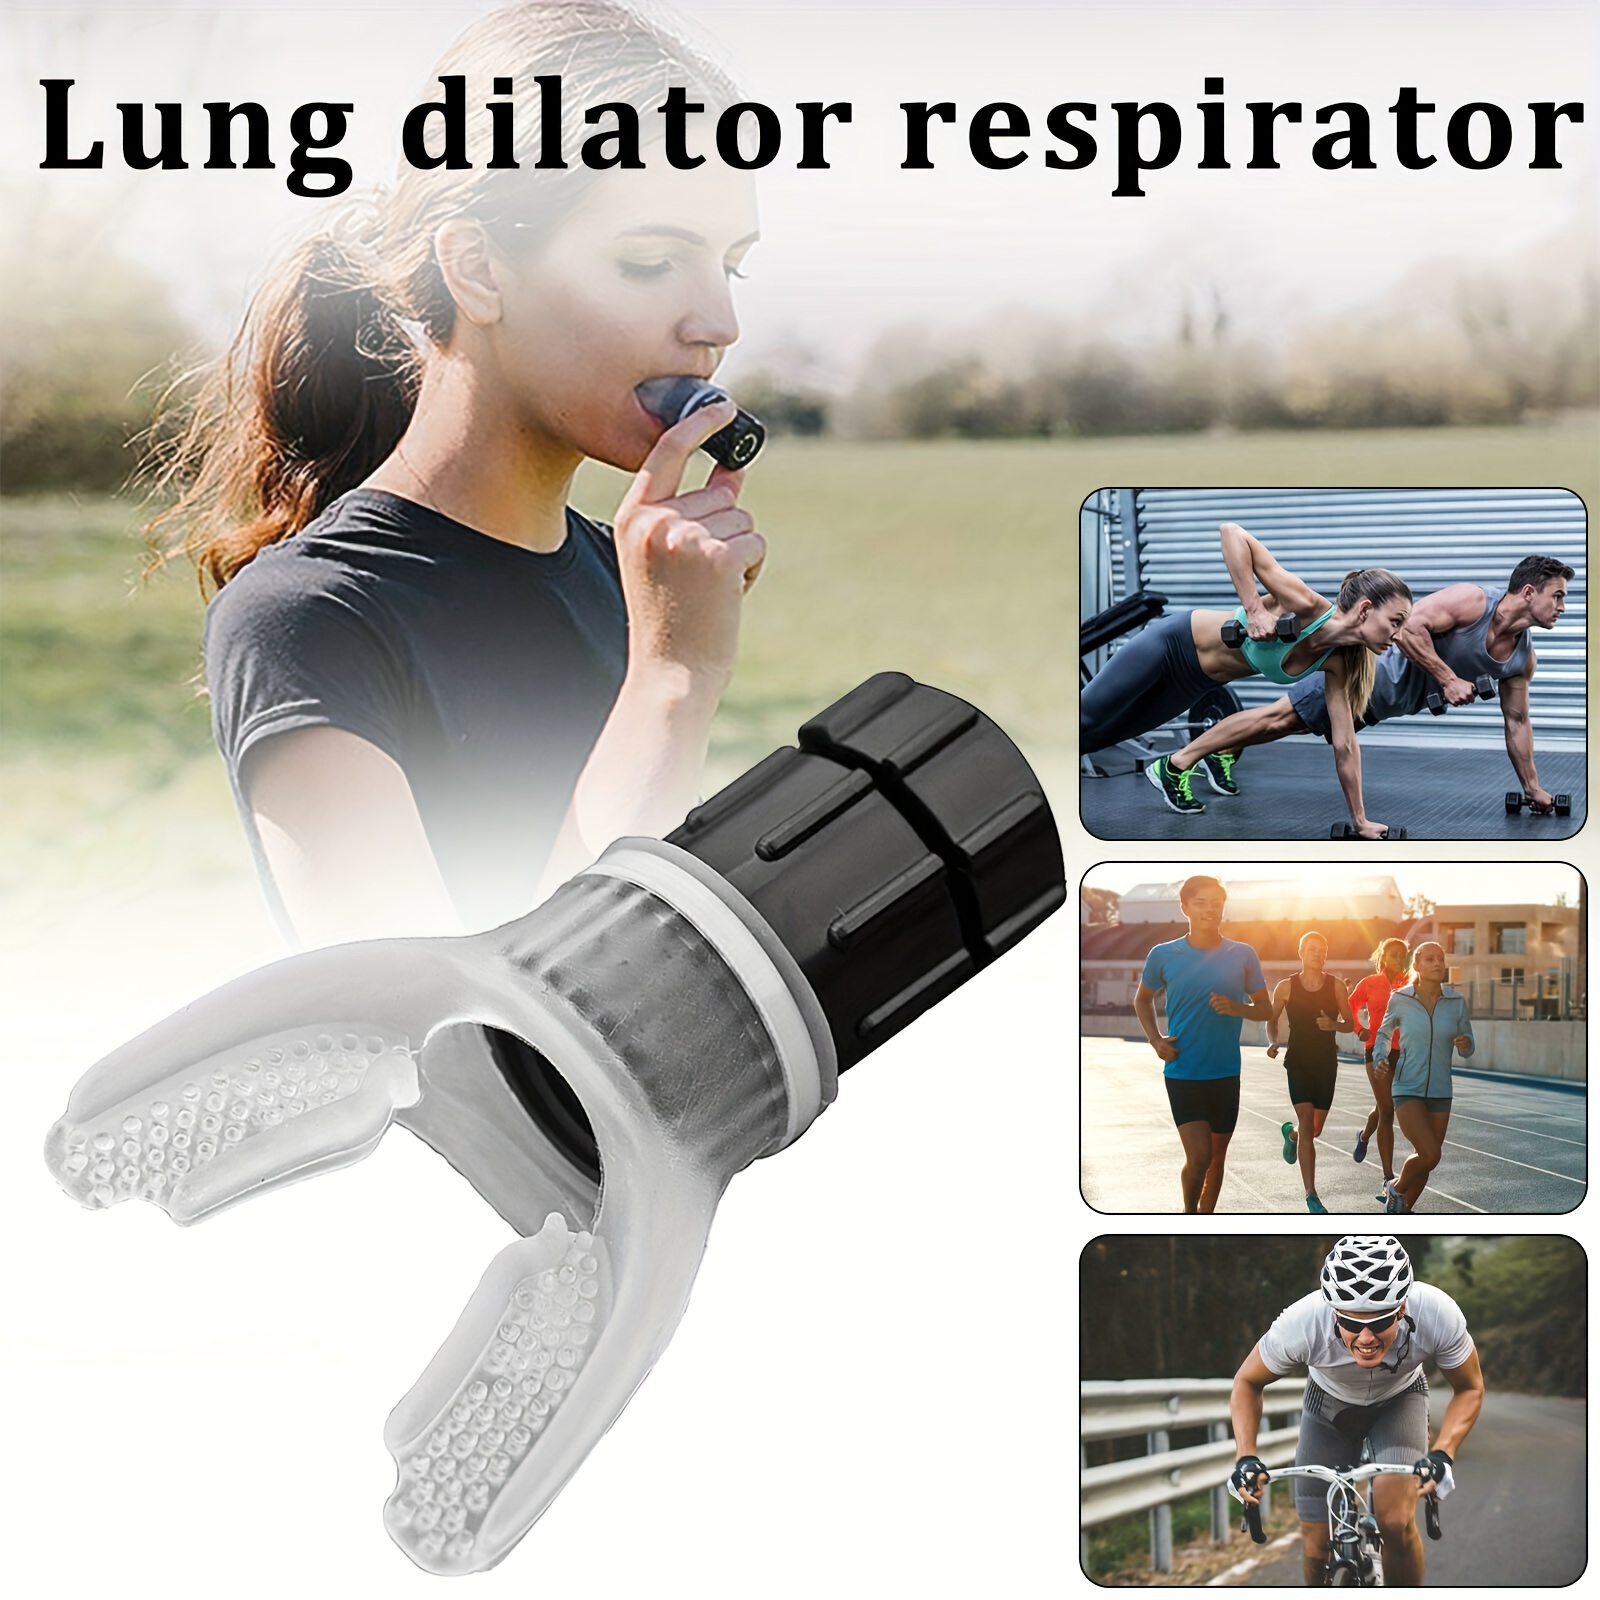 Appareil D'exercice Pulmonaire | Exercice Respiratoire Pour Les Poumons |  Outil D'entraînement Respiratoire Pour La Capacité Pulmonaire Portable 